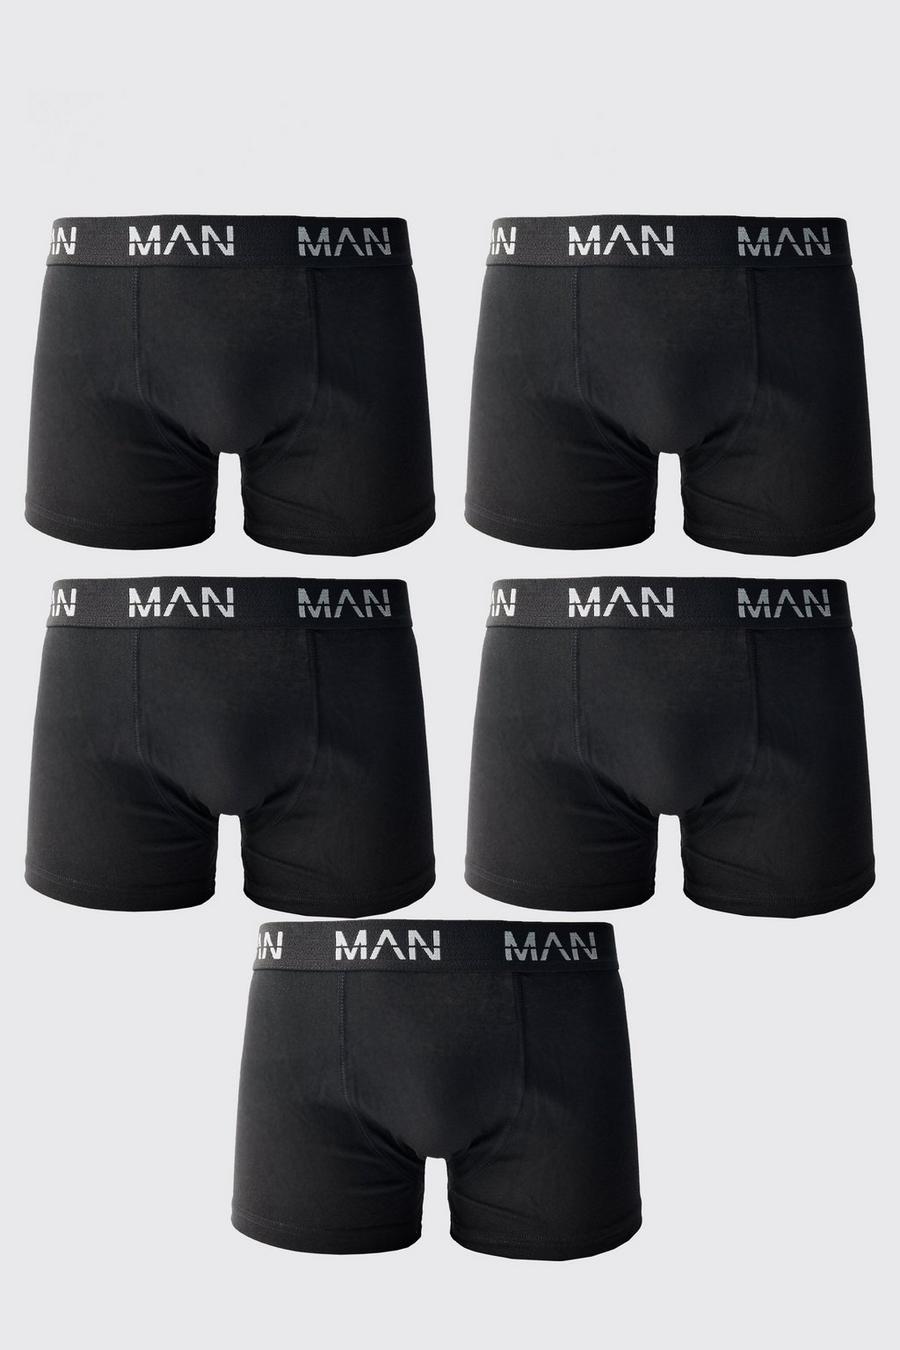 Boxer Man - set di 5 paia, Black